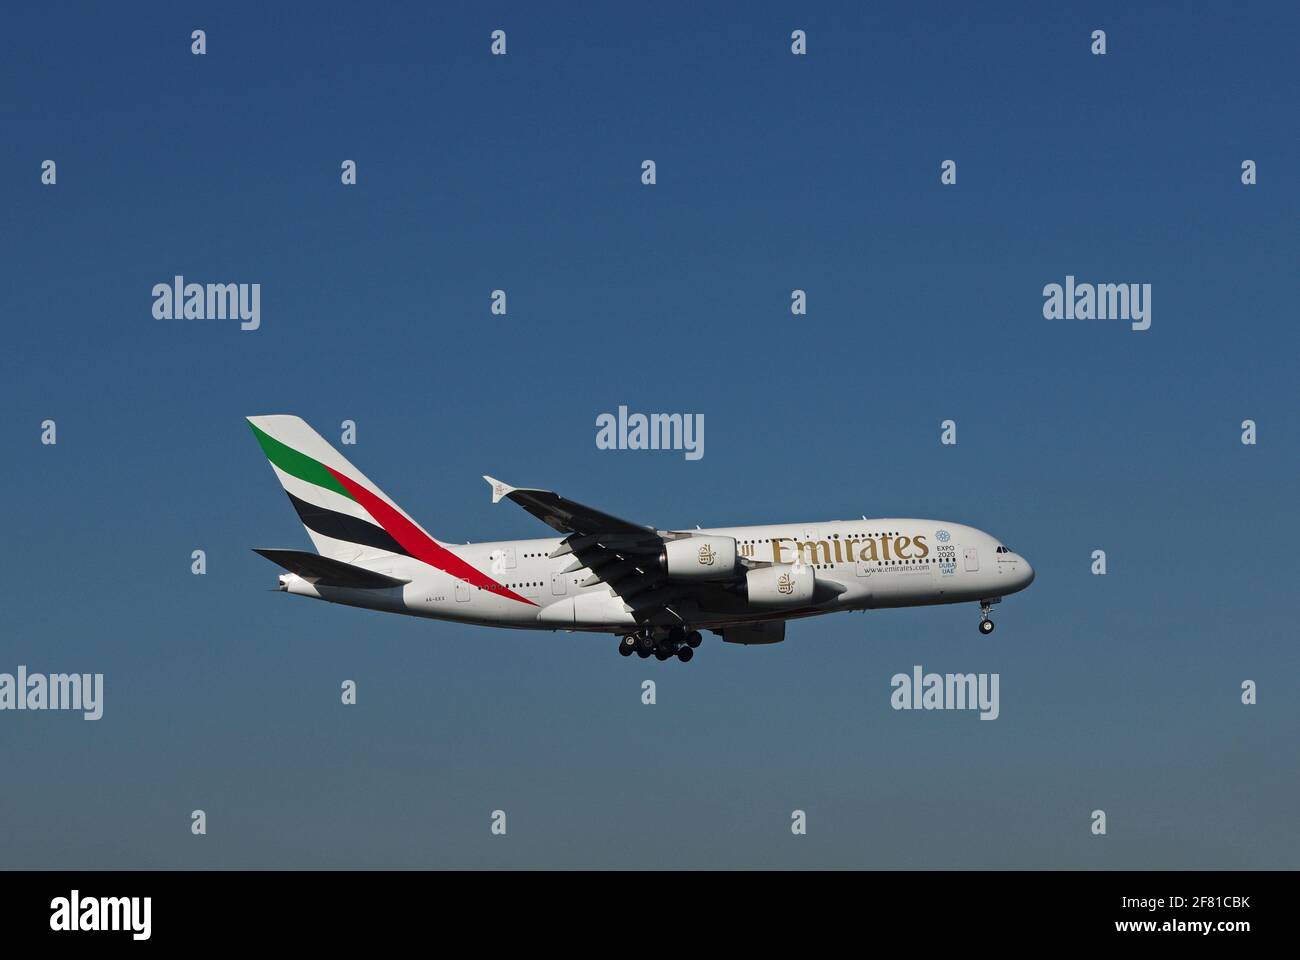 Düsseldorf, Allemagne - 16 février 2016 : Airbus A380-800 d'Emirates Airline à l'aéroport de Düsseldorf lors de l'approche finale Banque D'Images